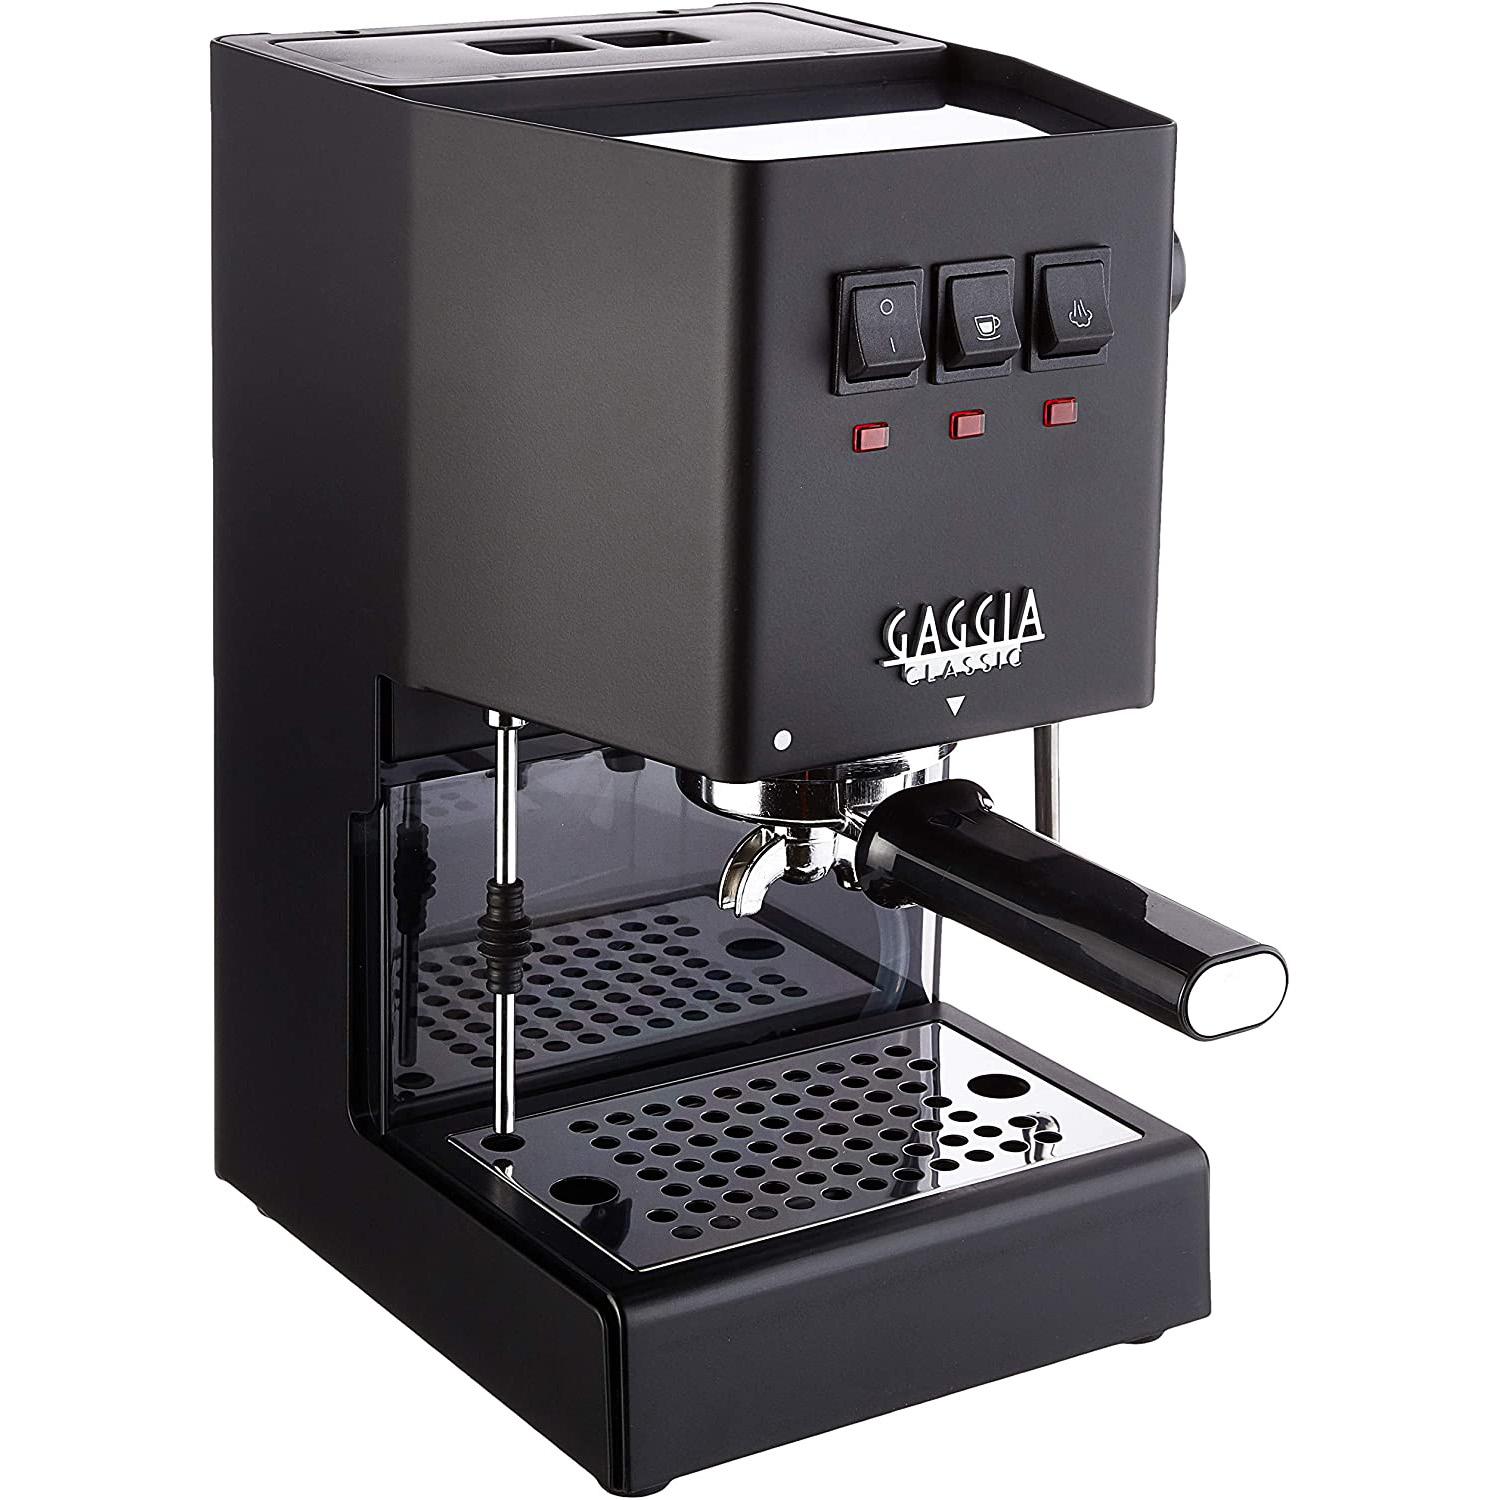 Gaggia Classic Pro Espresso Machine for $399.20 Shipped